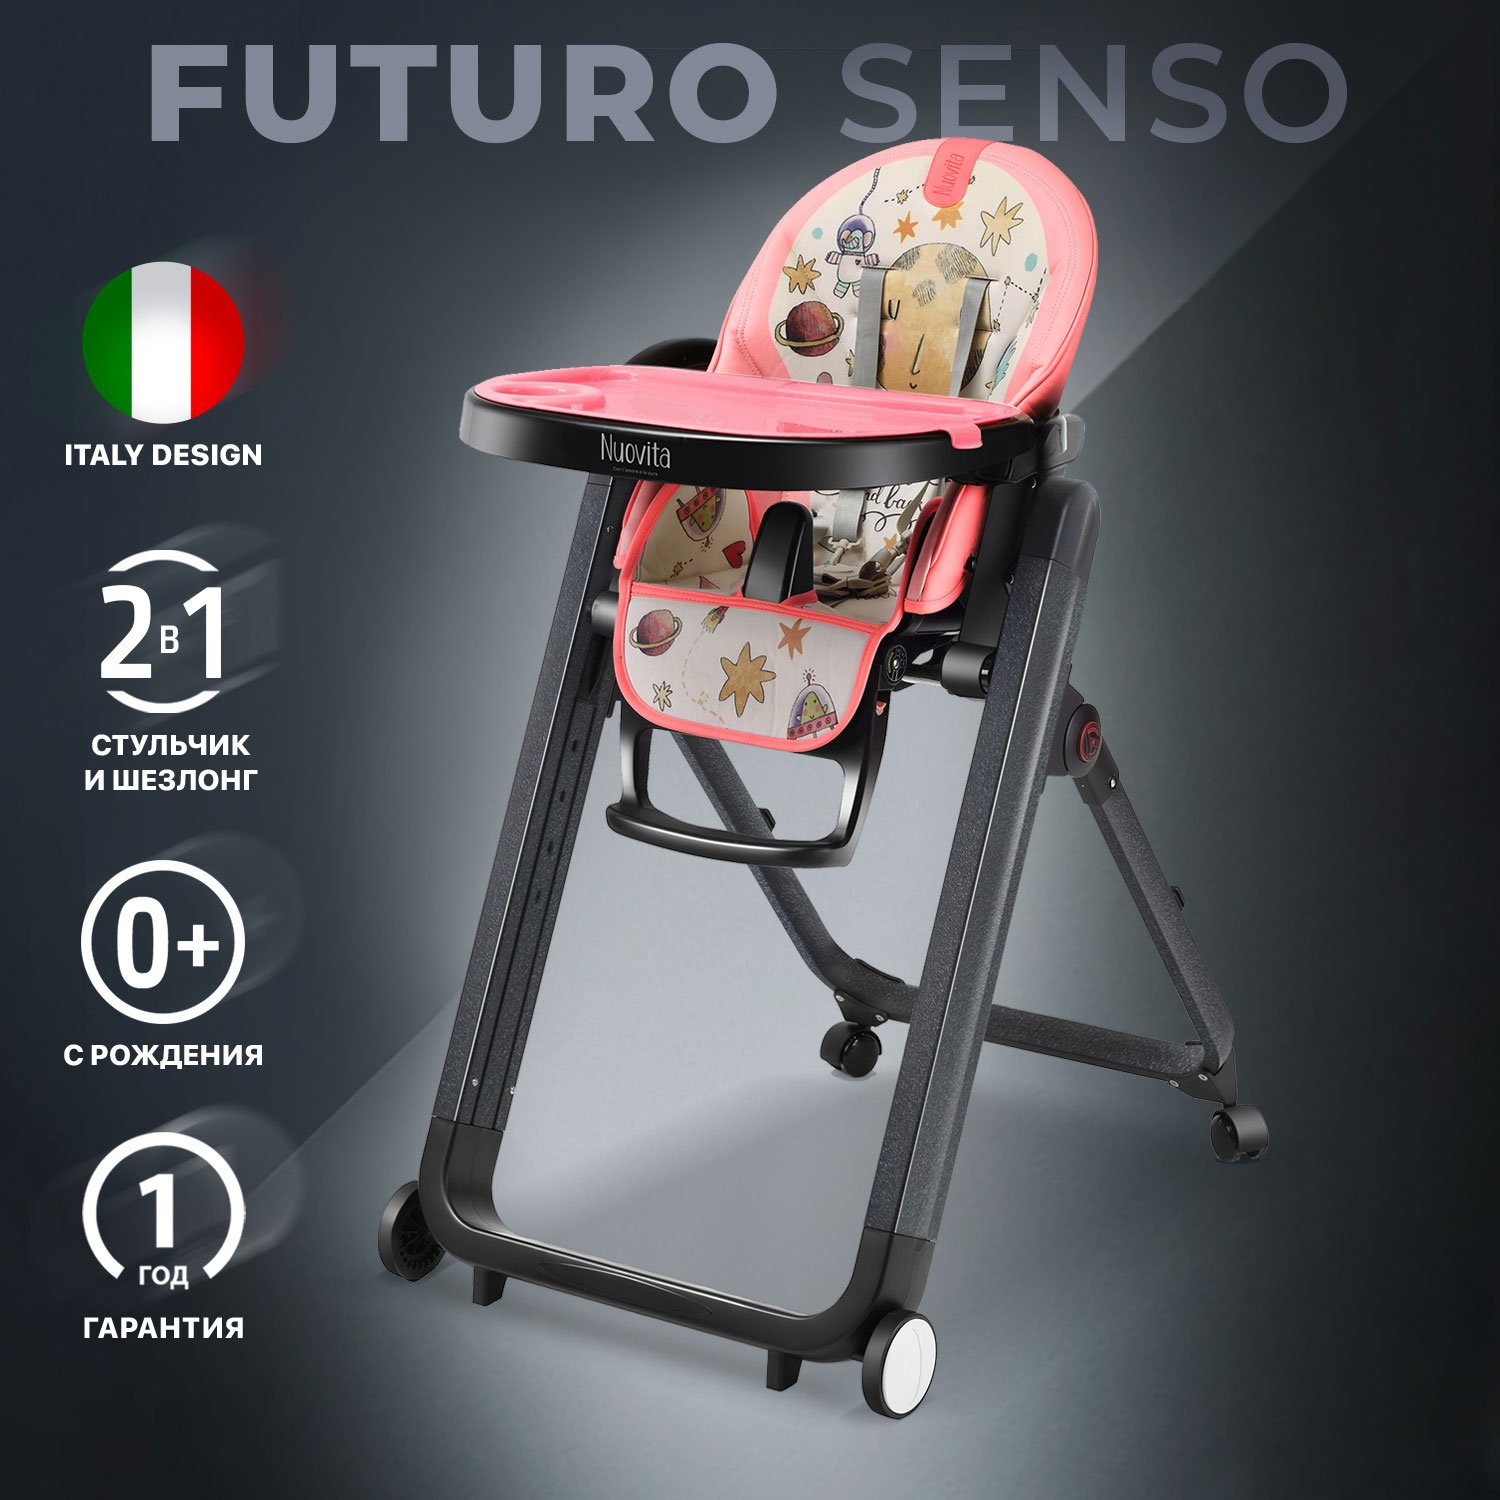 Стульчик для кормления Nuovita Futuro Senso Nero (Cosmo rosa/Розовый космос) стульчик для кормления nuovita futuro senso nero marino морской